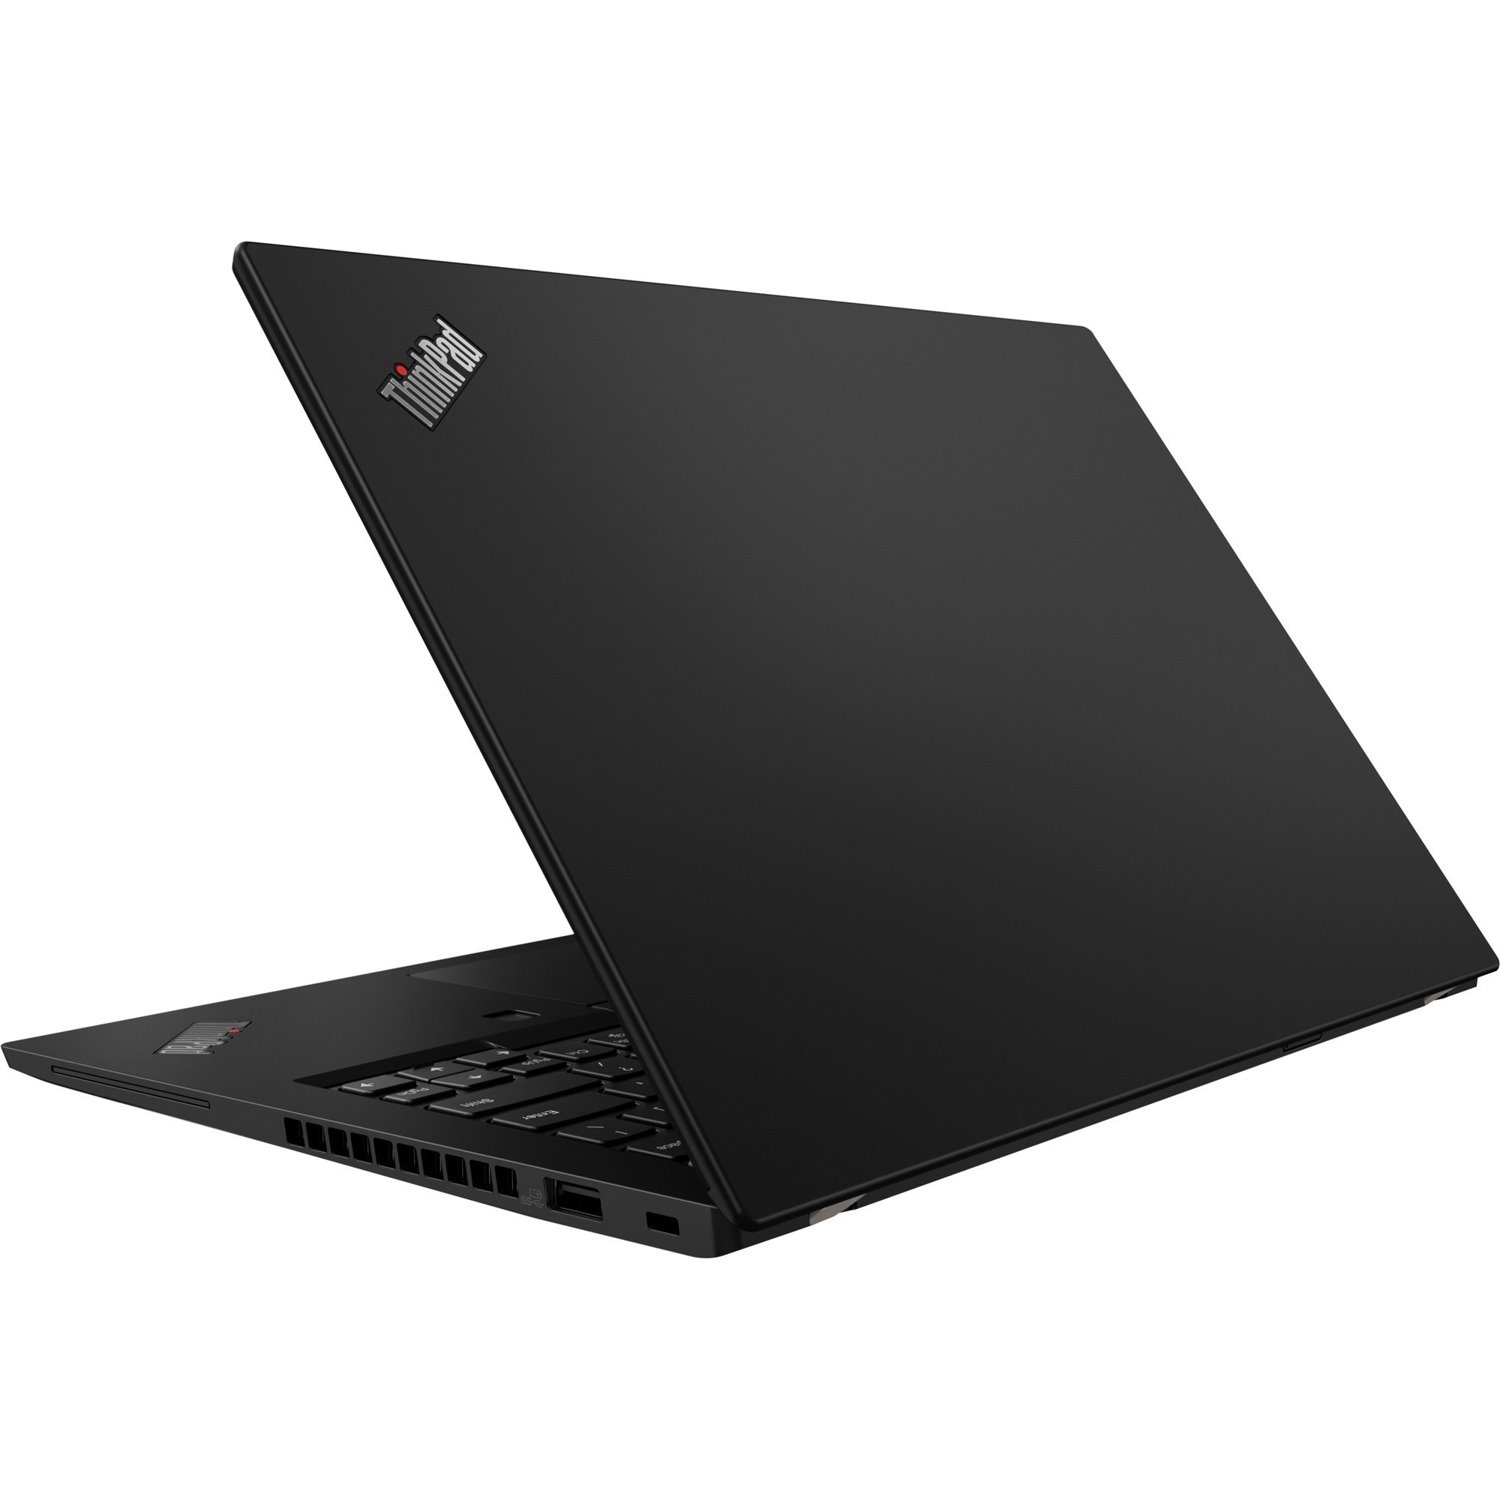 Lenovo ThinkPad X13 Gen 1 20T2002ACA 13.3" Notebook - Full HD - 1920 x 1080 - Intel Core i5 10th Gen i5-10210U Quad-core (4 Core) 1.60 GHz - 16 GB Total RAM - 256 GB SSD - Black